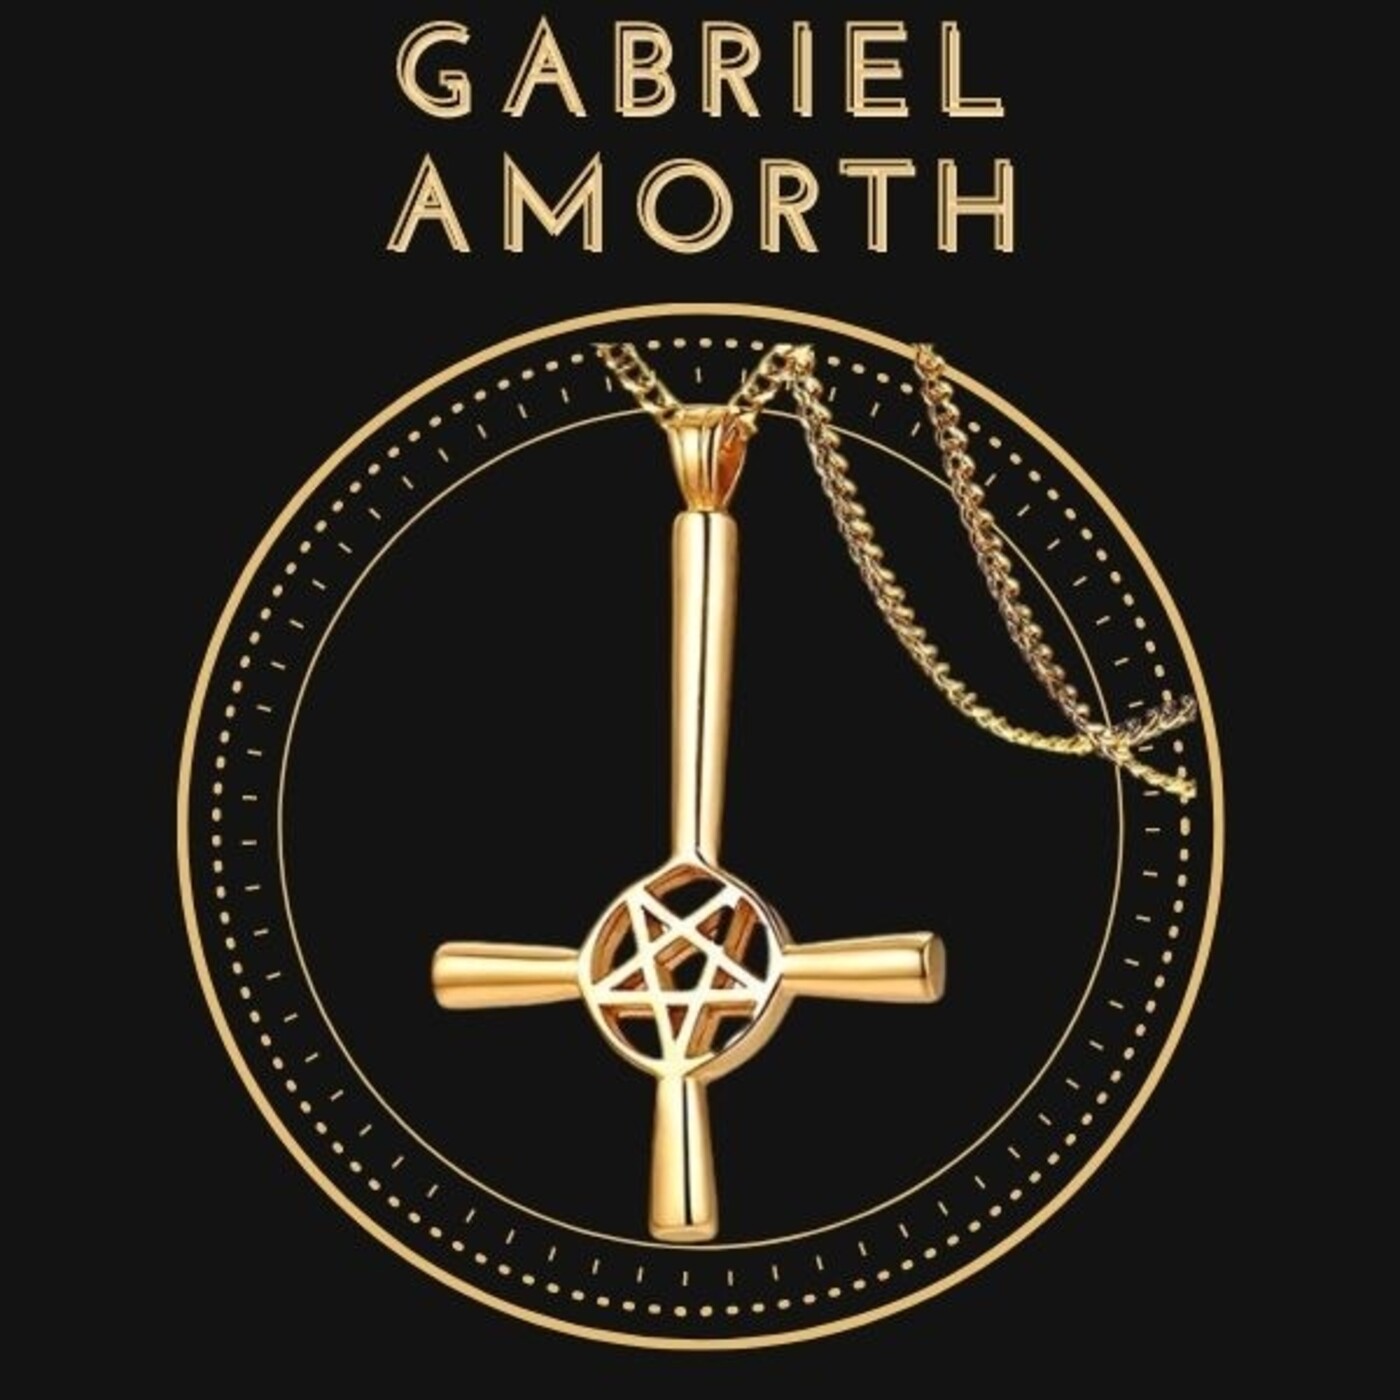 Ep. 6 Historia Oculta: Gabriel Amorth. El Último Exorcista del Vaticano